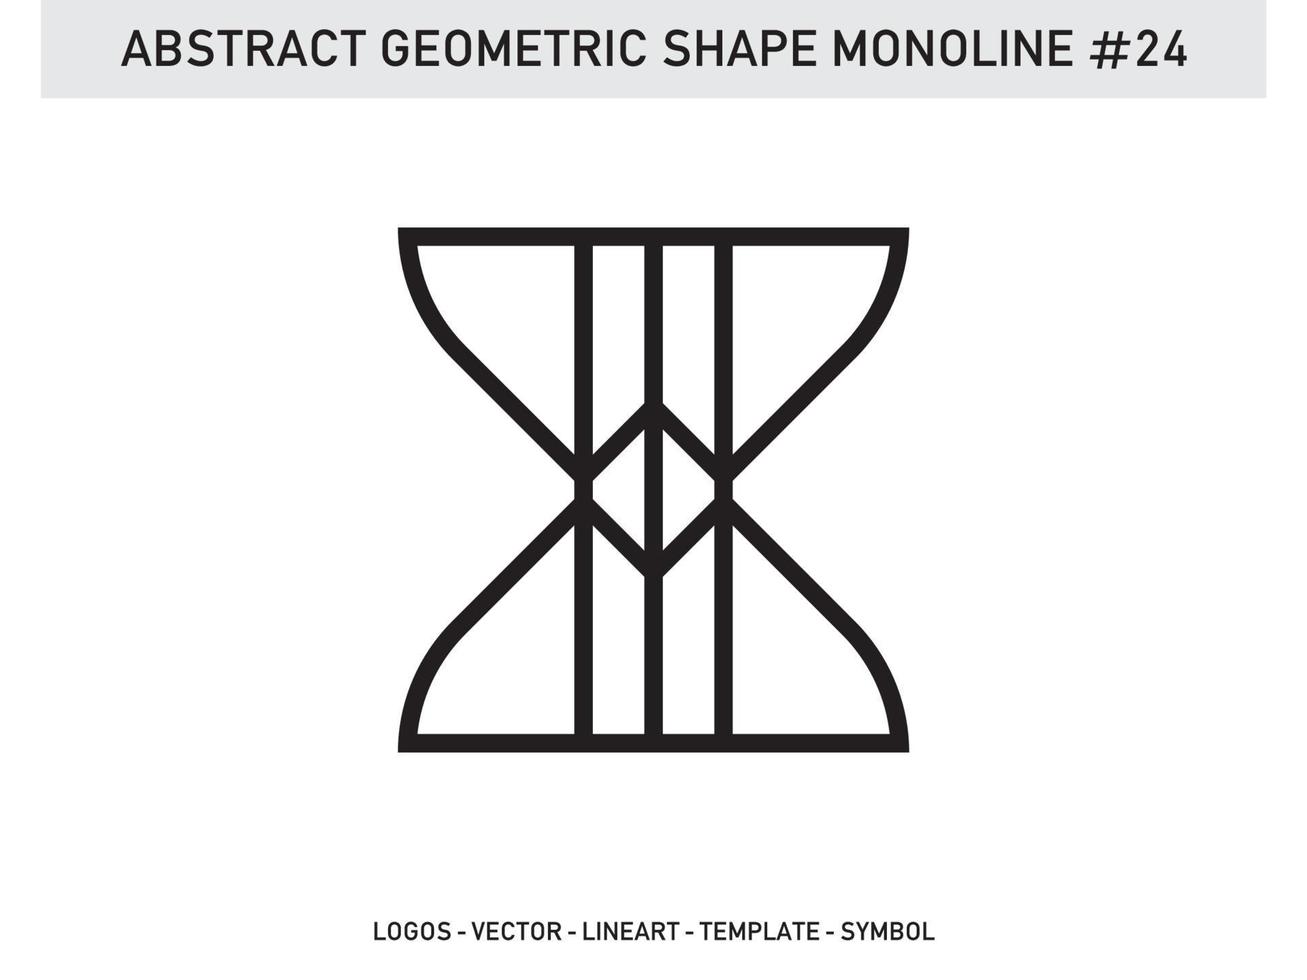 abstracto geométrico monoline lineart diseño azulejo vector gratis